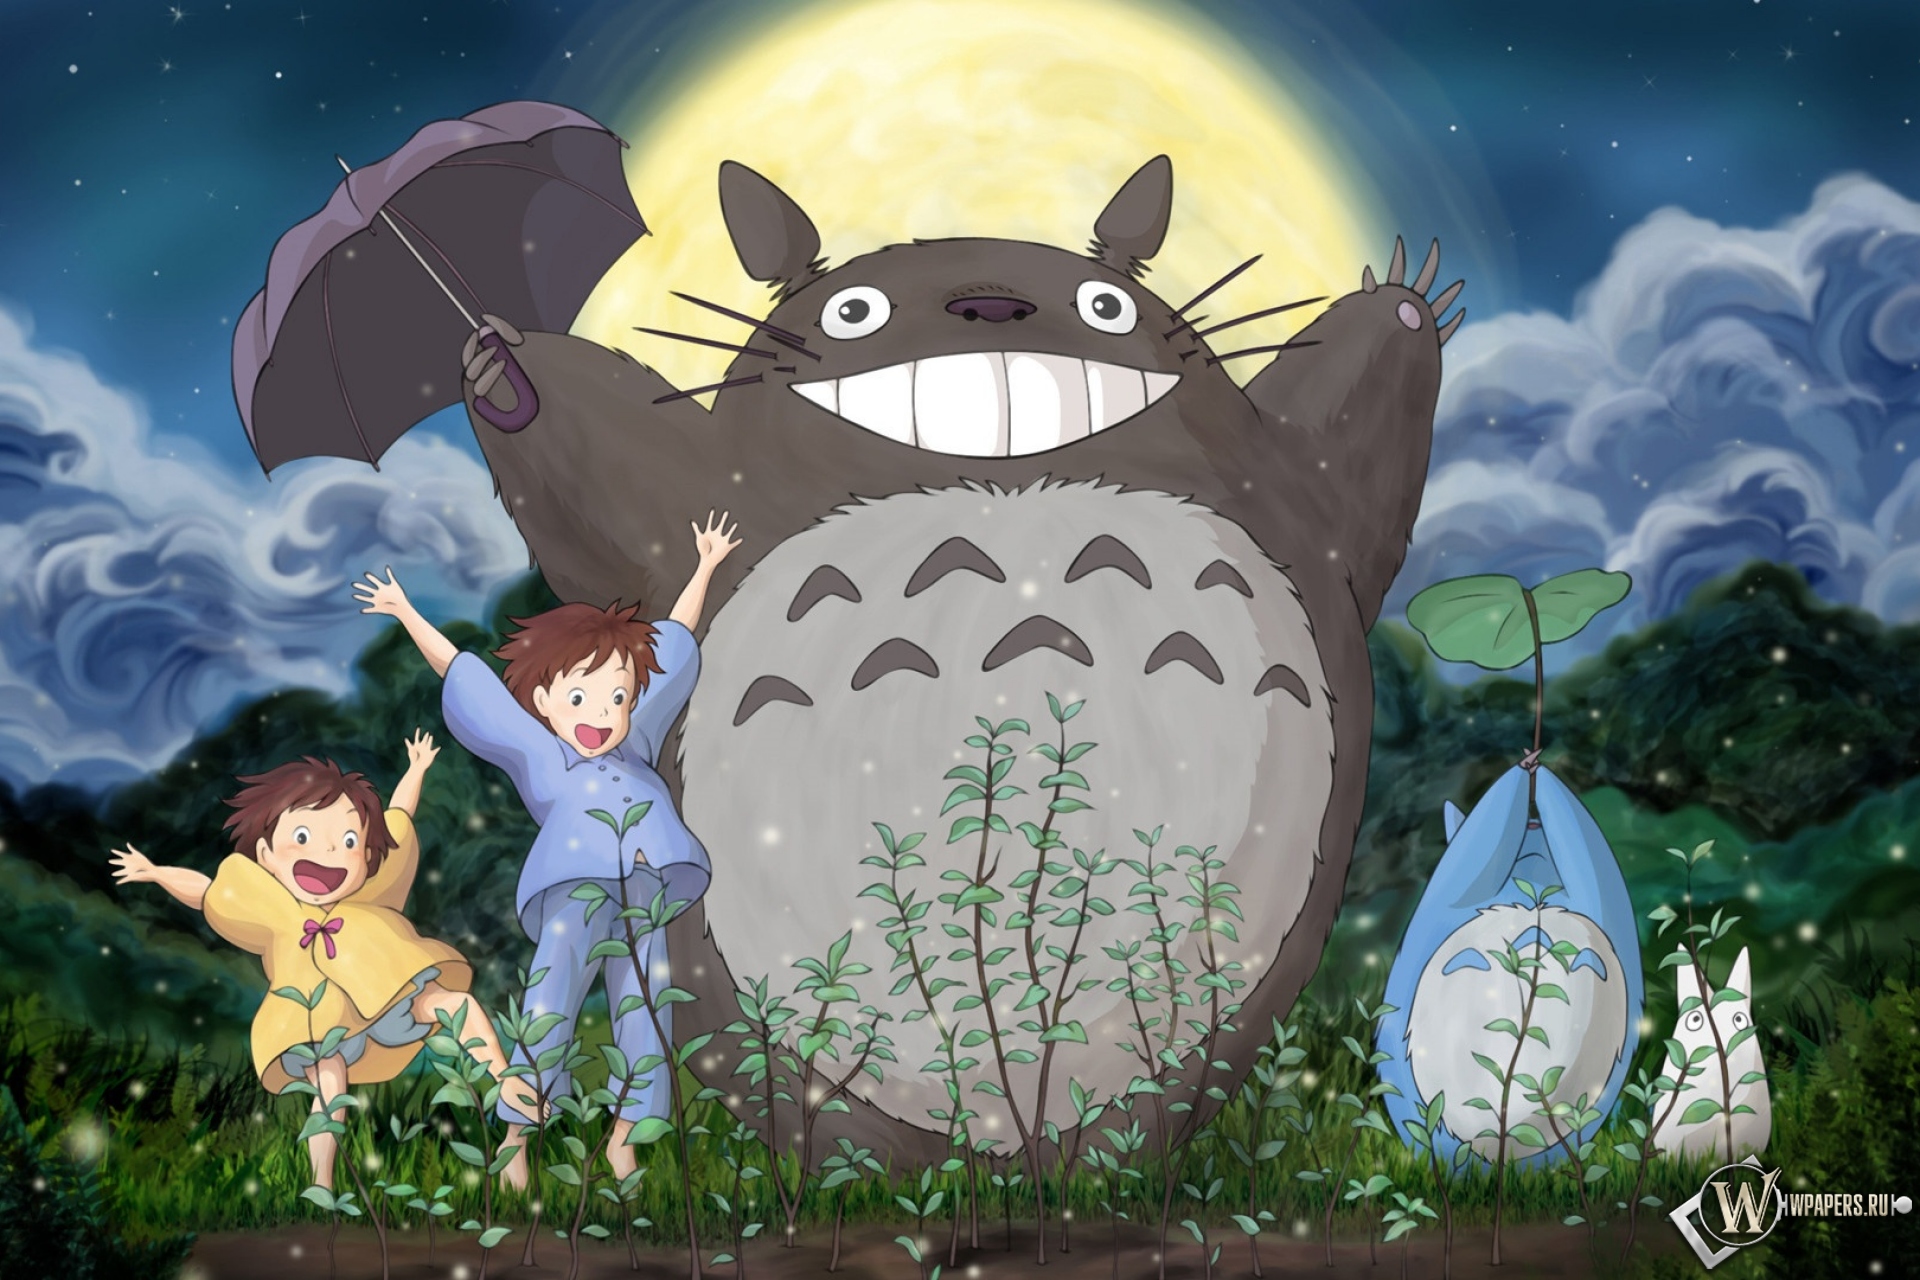 Скачать обои My Neighbor Totoro с разрешением 1920х1280 (25:16) .